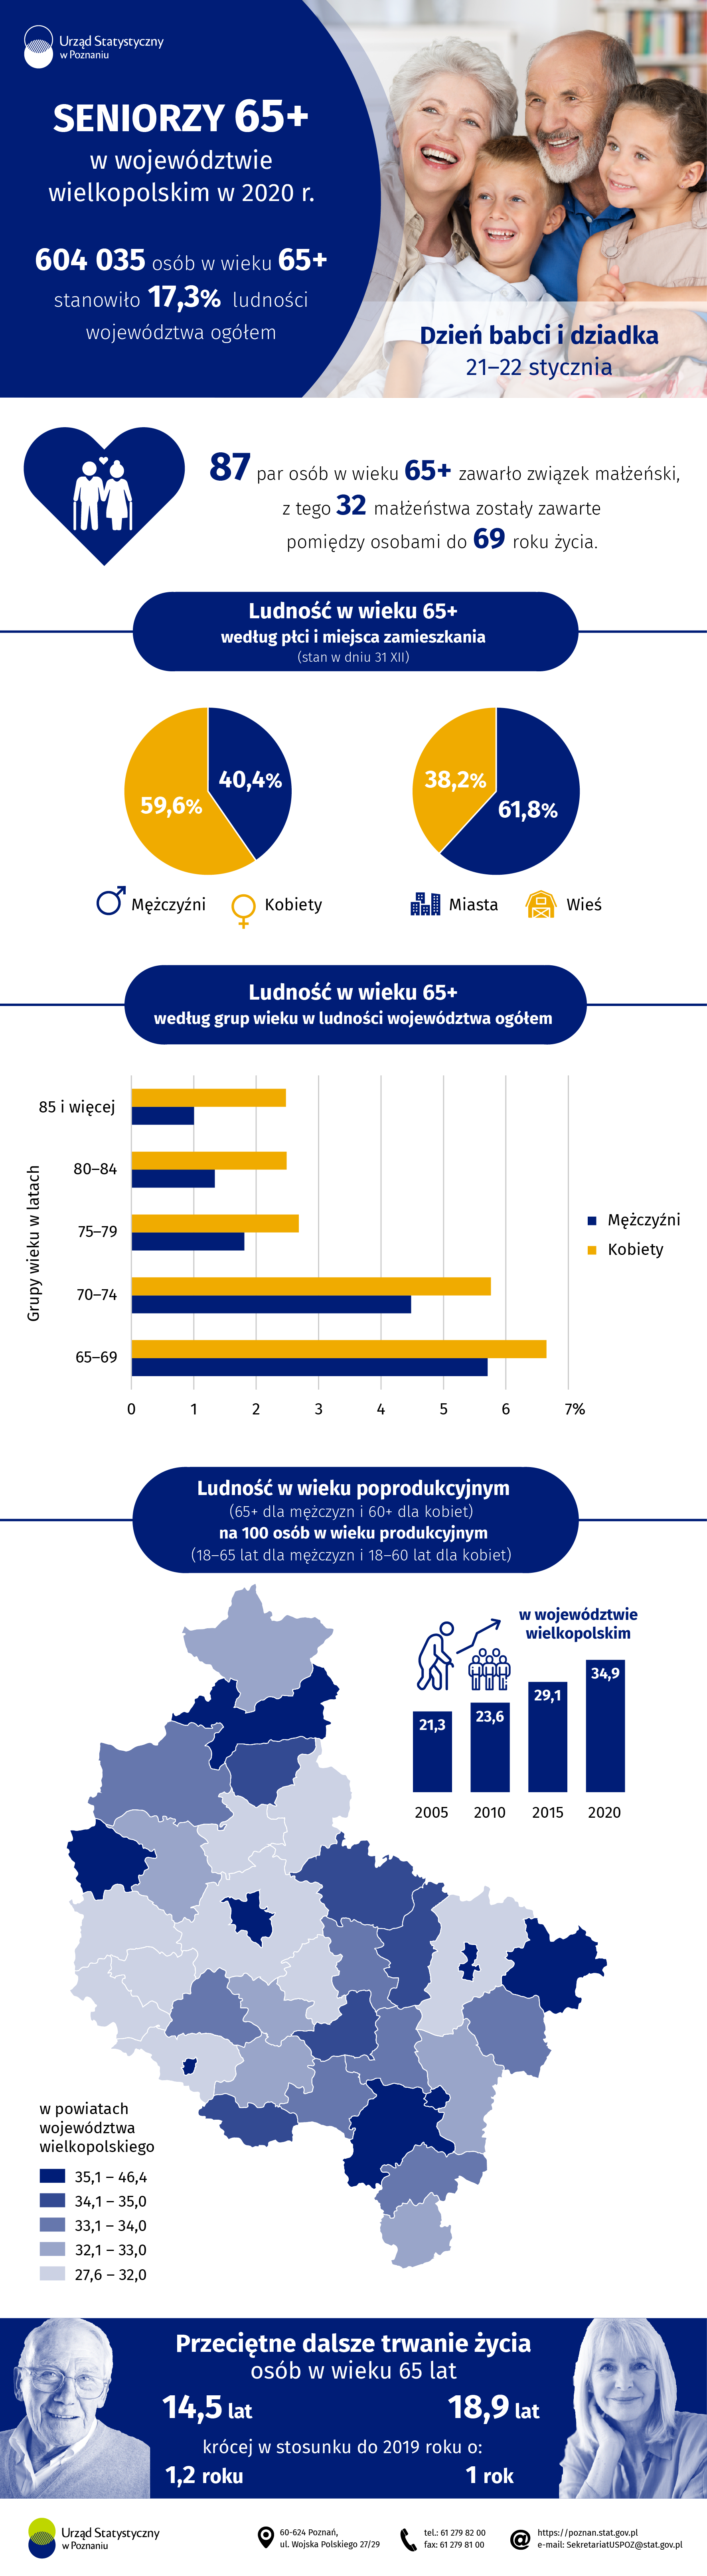 Infografika przedstawiająca dane dotyczące seniorów 65+ w województwie wielkopolskim w 2020 r.